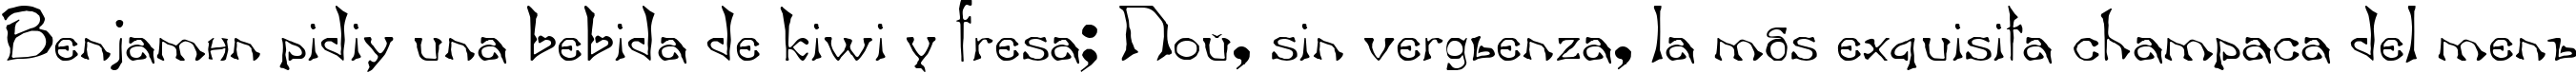 Пример написания шрифтом Bard.kz текста на испанском